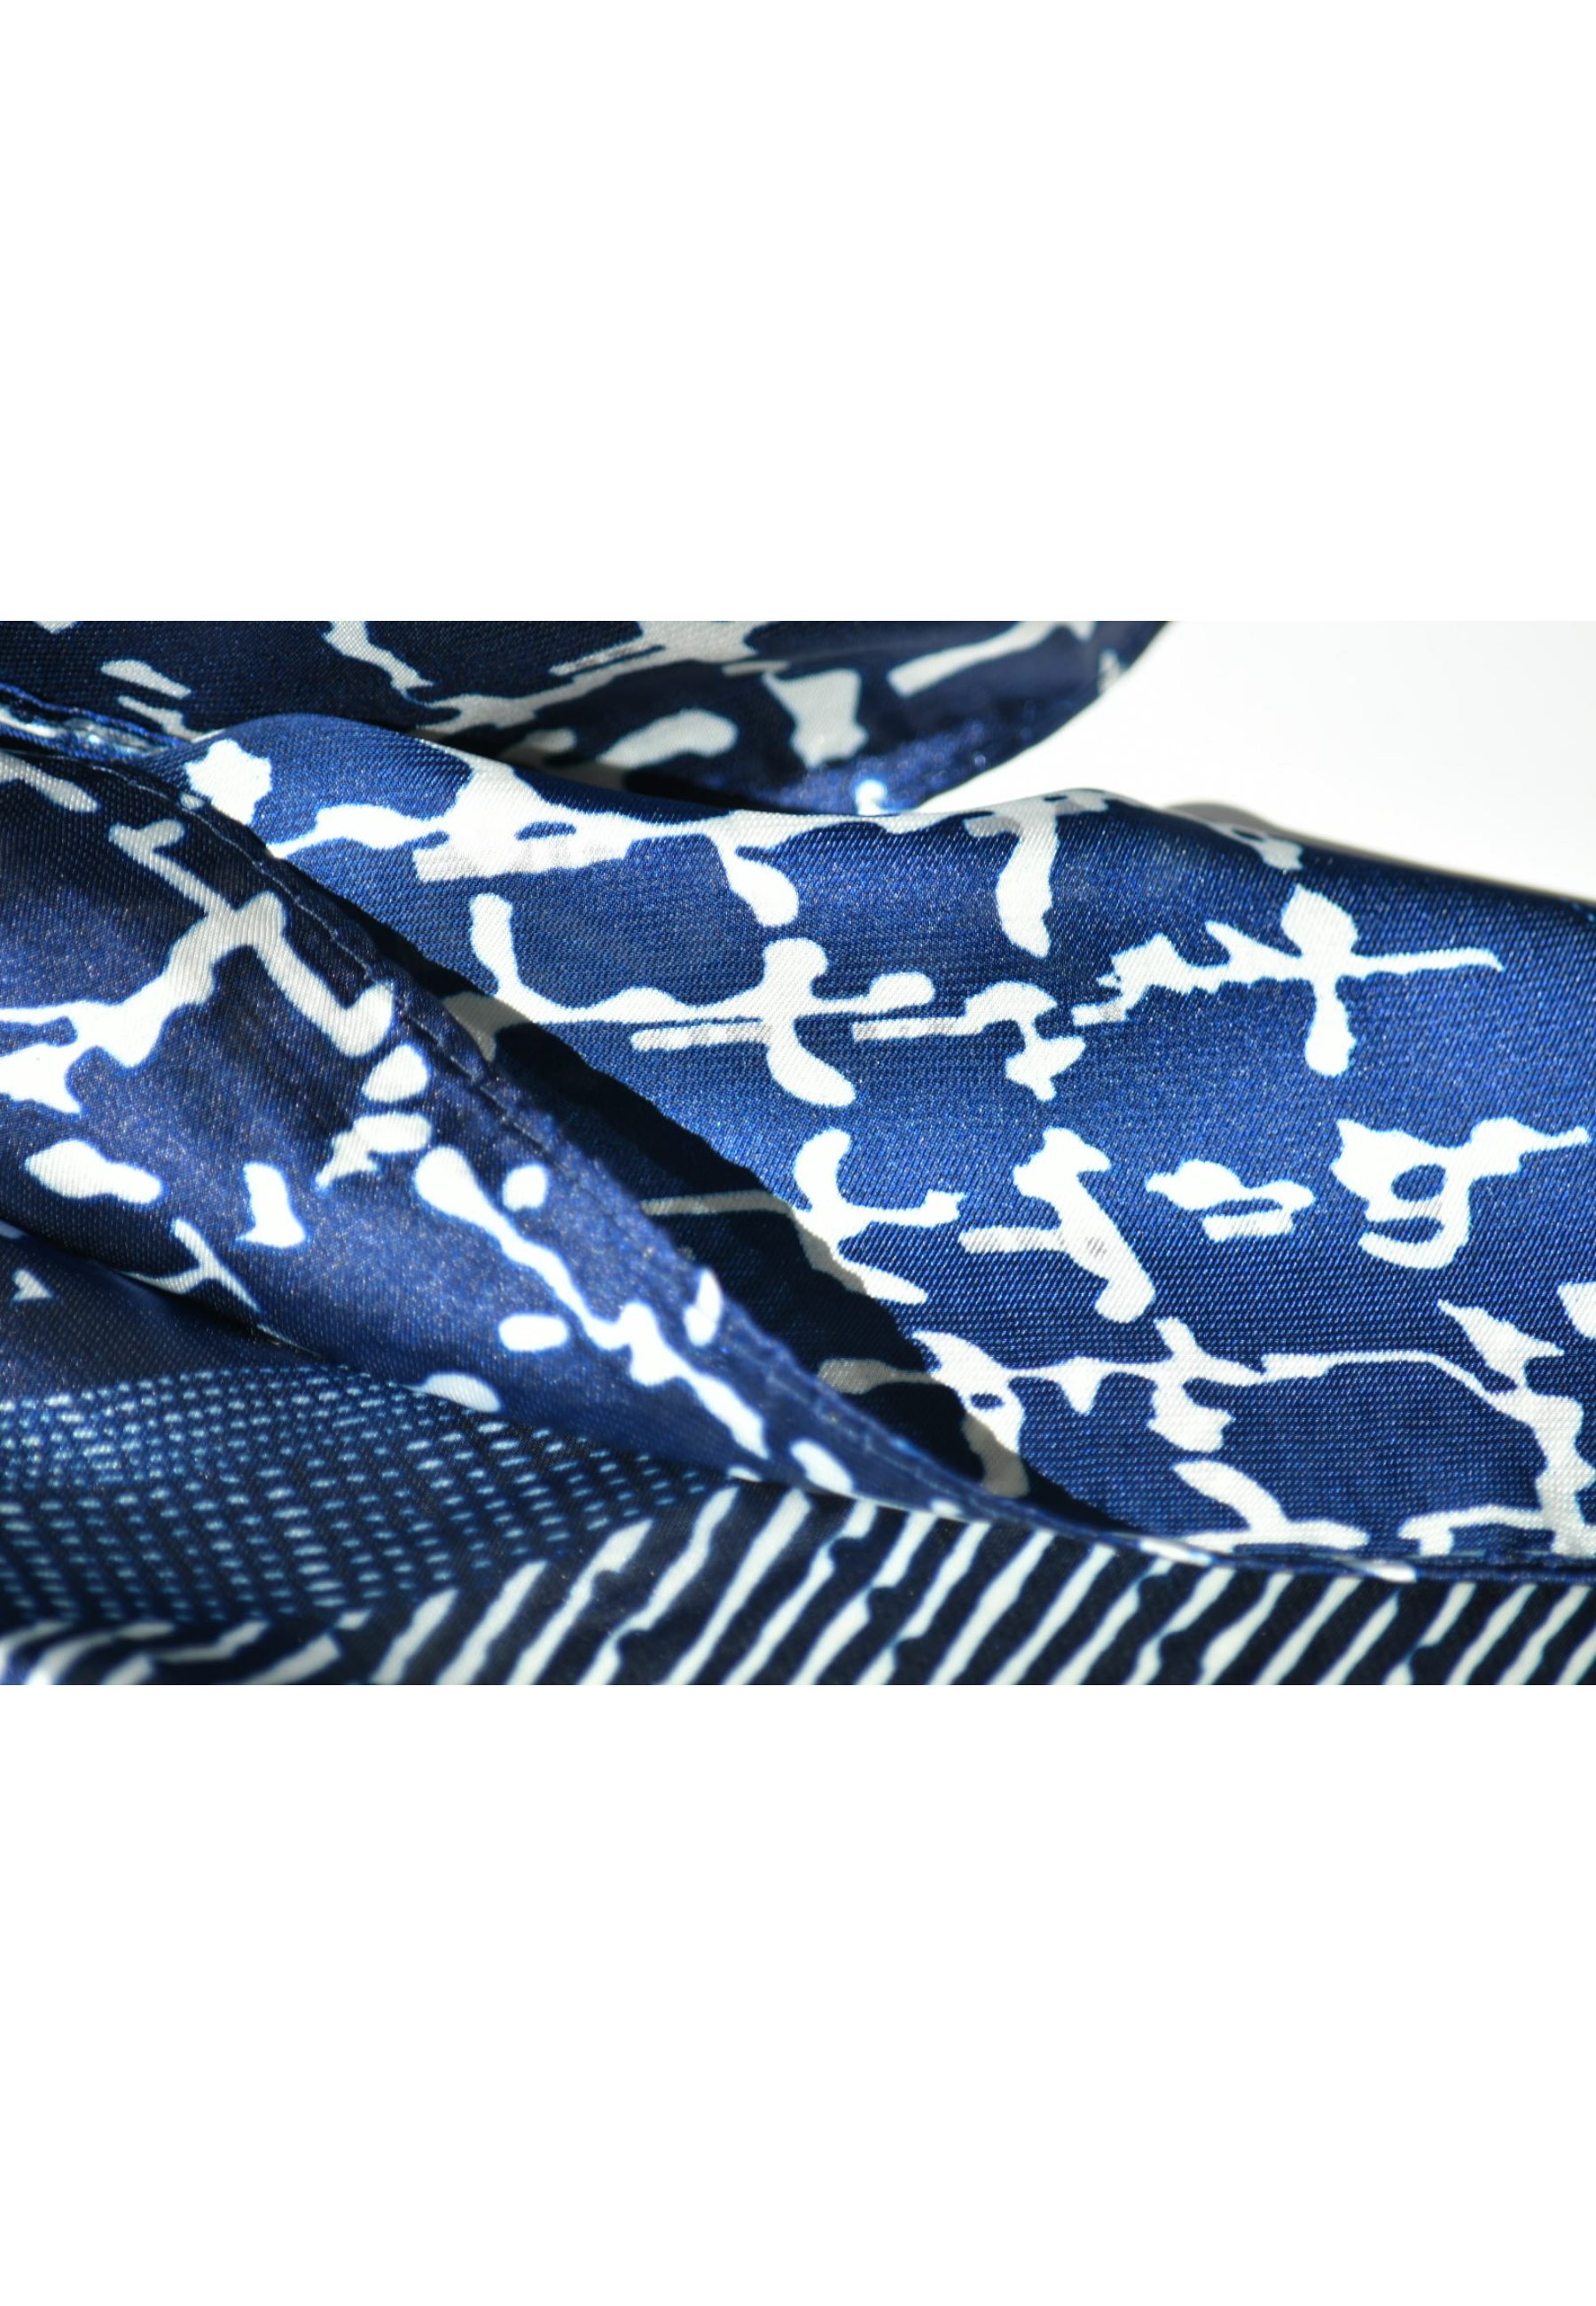 Blue Chilli Schal Hochwertiger jedes Design2 Party, bedruckter Kopftuch Eleganz für für Frauen, Modedesigner aus Seide, Schal Stilvoller Seidenschal Outfit